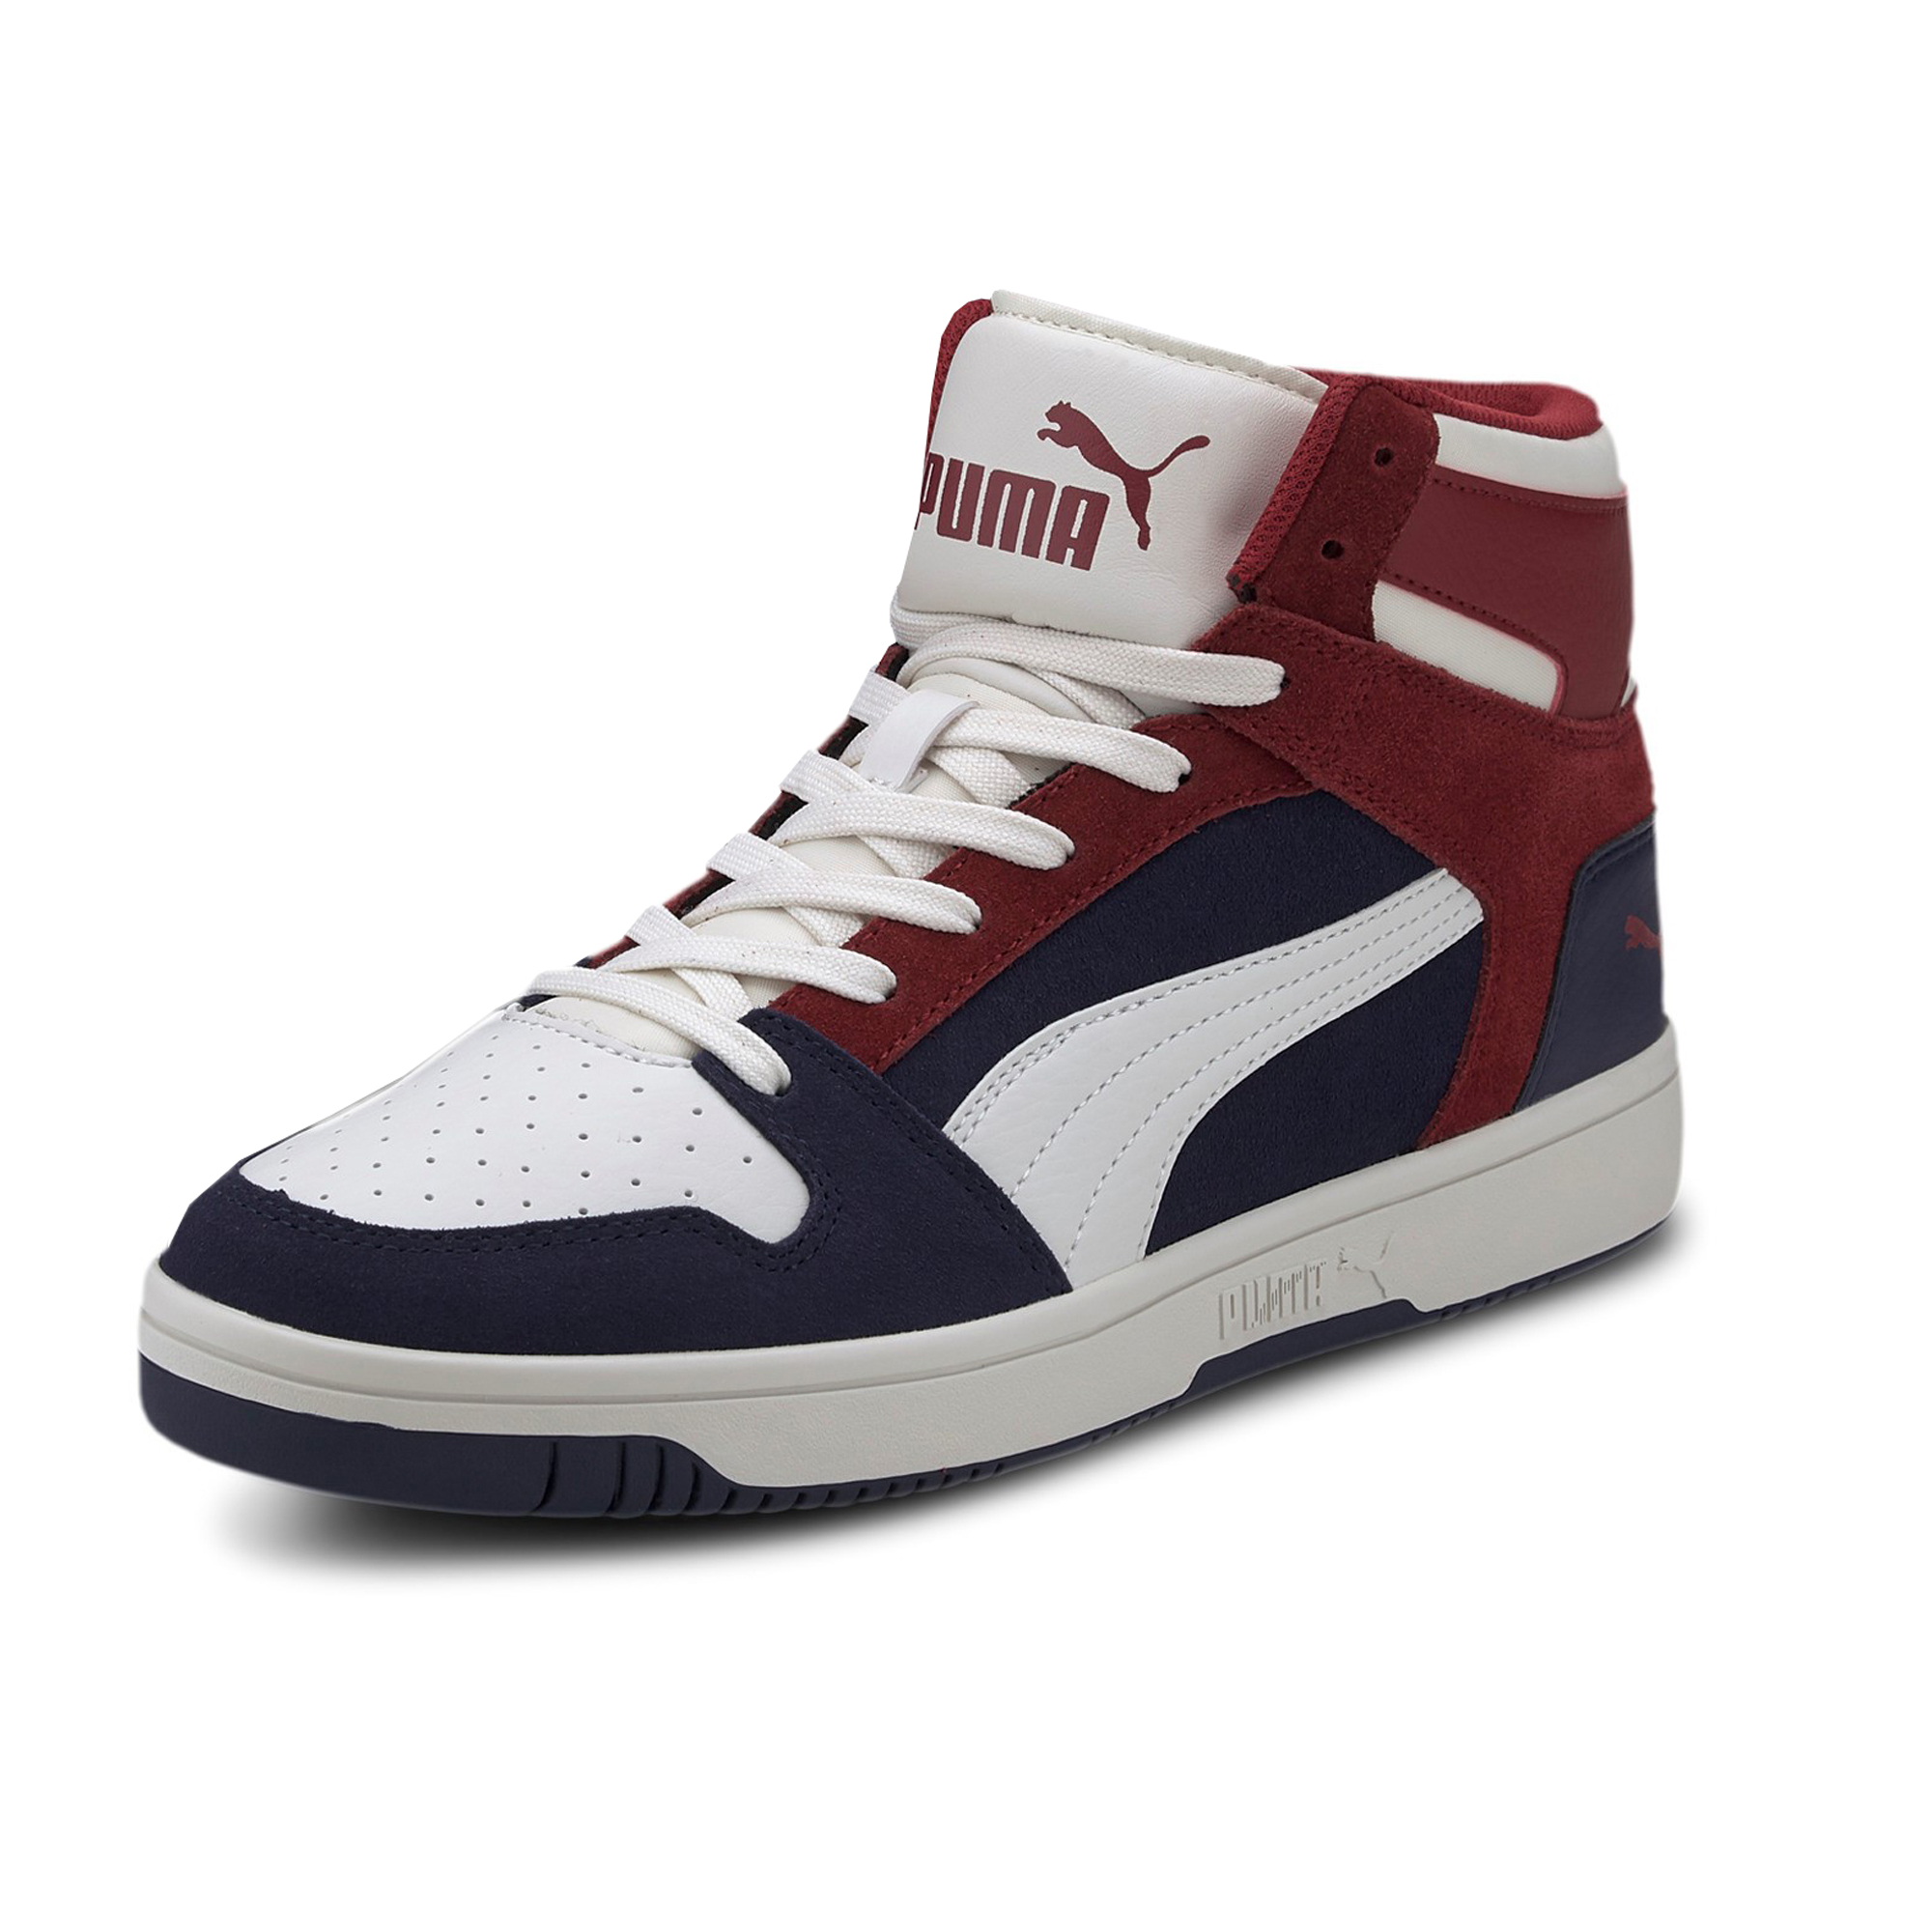 Puma Rebound LayUp SD Hoher Sneaker Stiefel Boots Herren Sneaker 370219